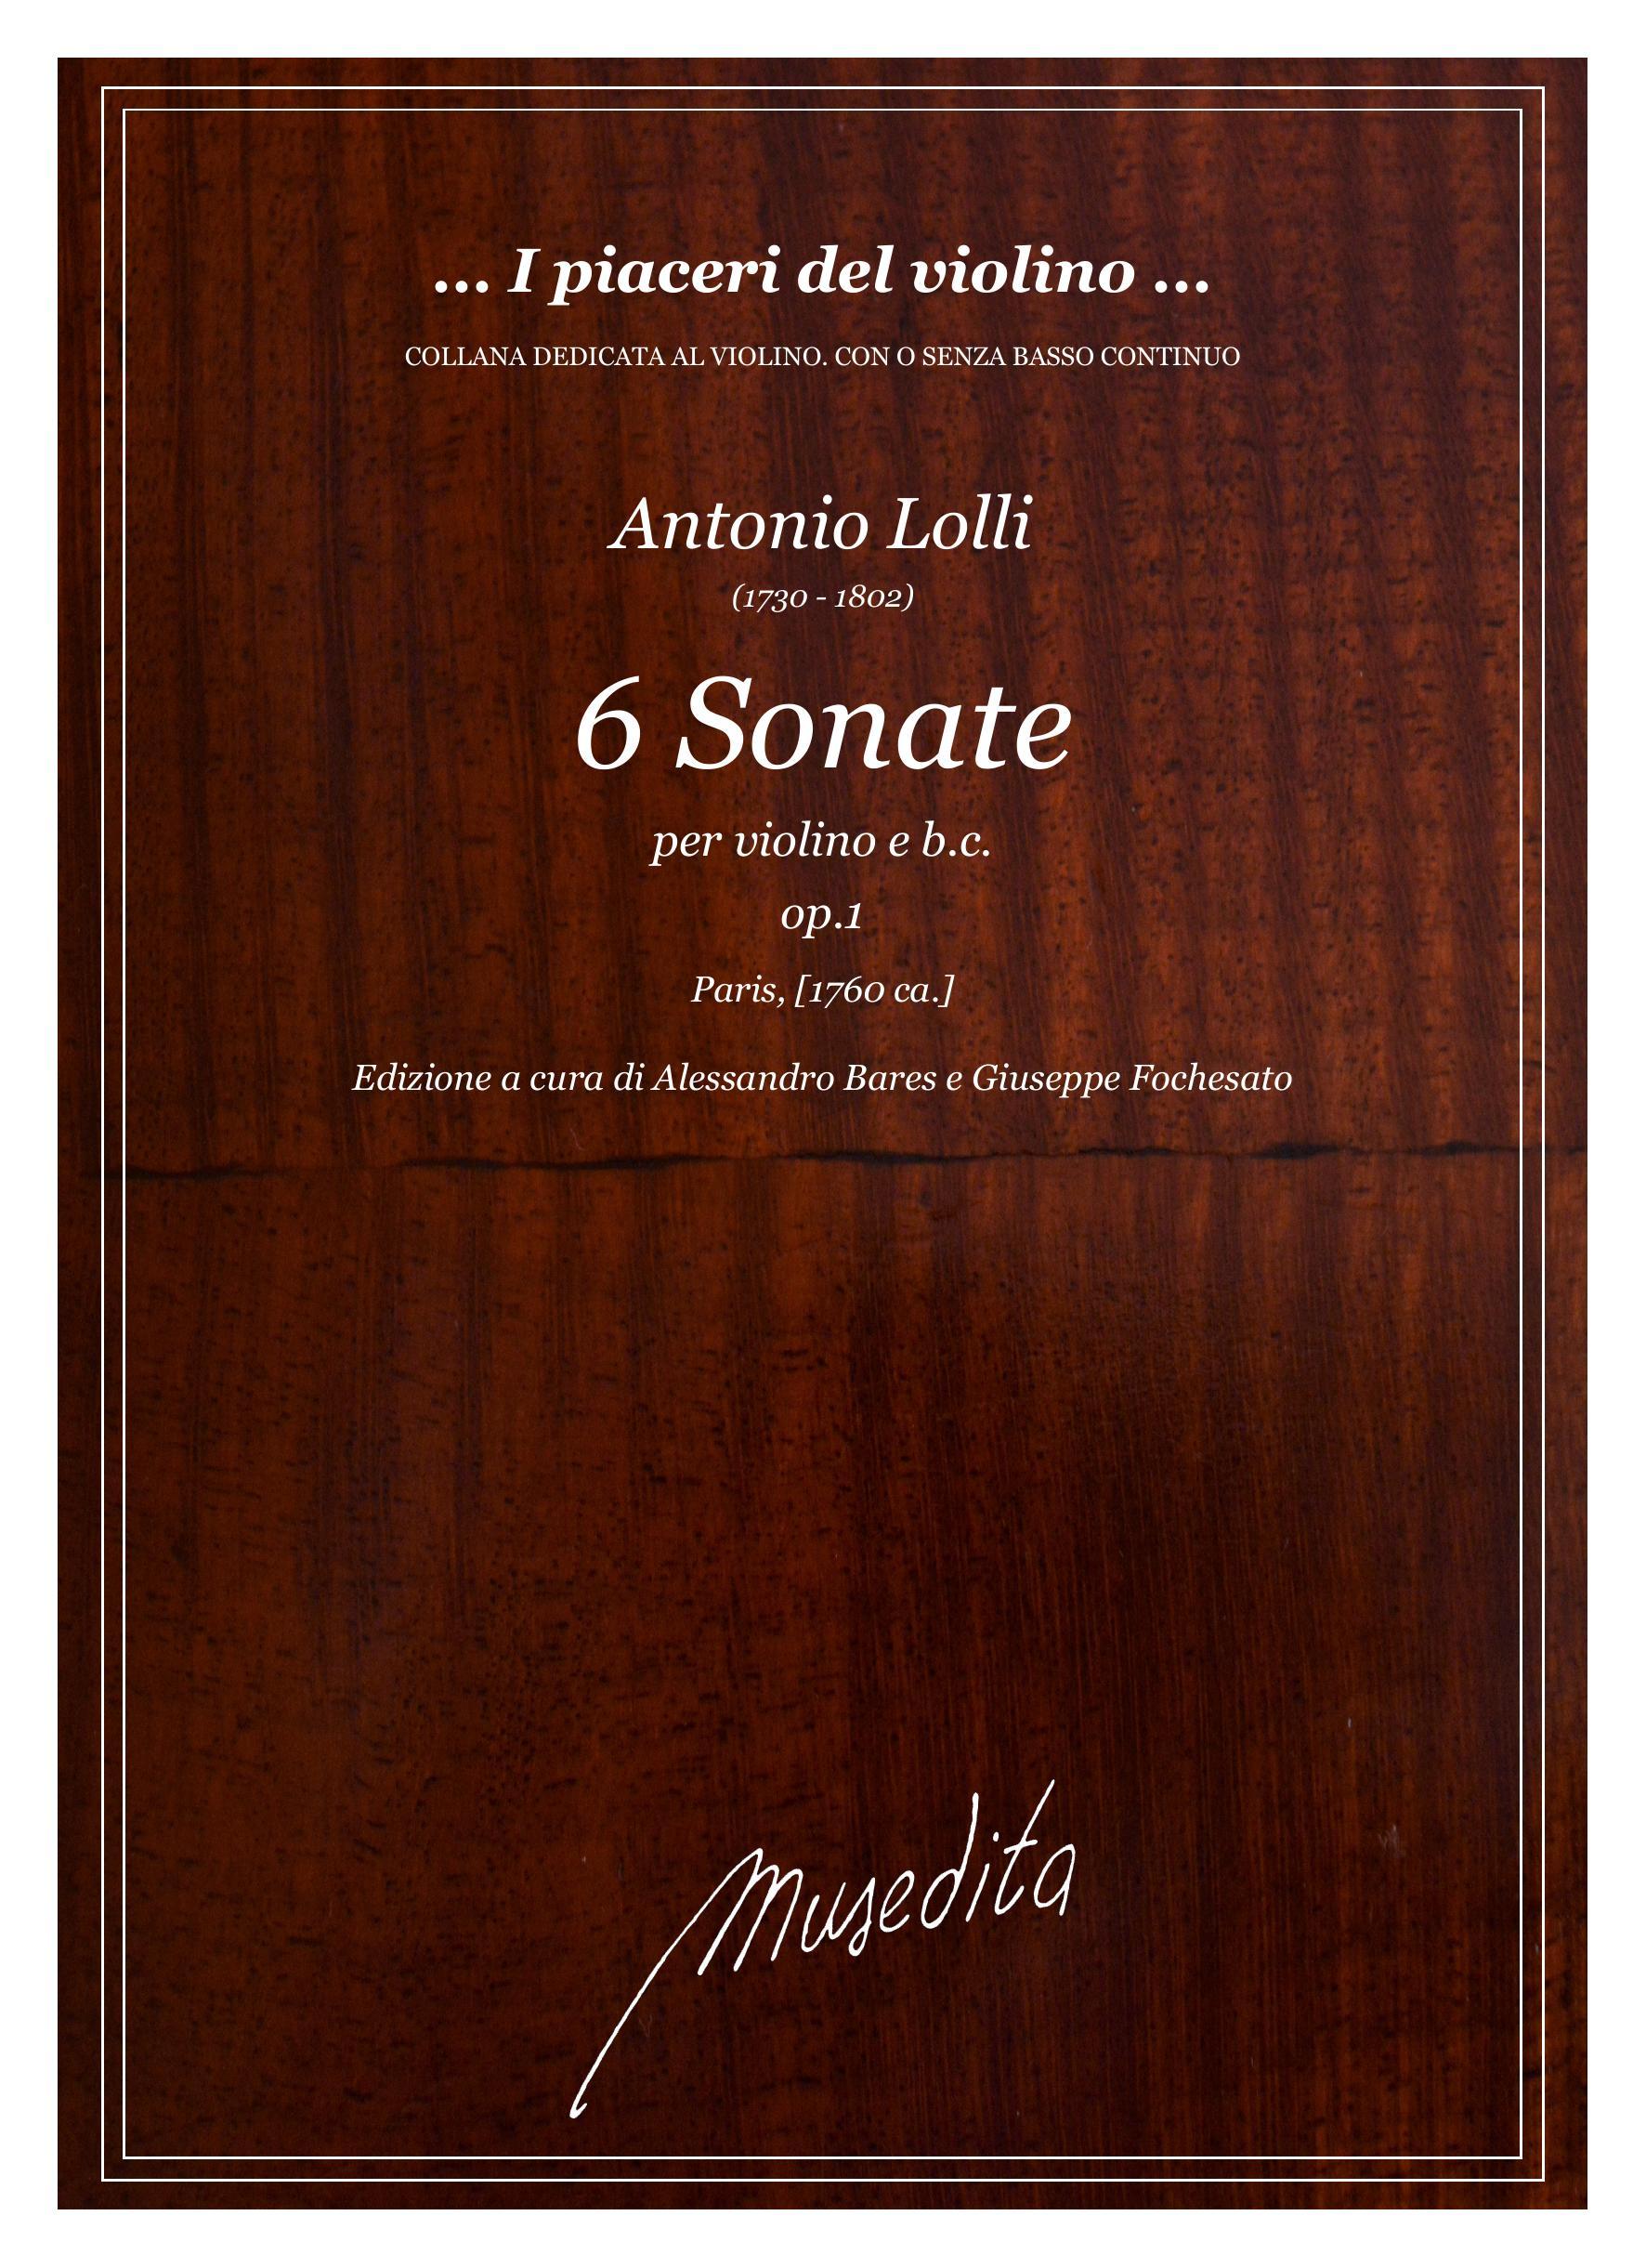 A.Lolli: 6 Sonate op.1 (Paris, 1760 ca.)